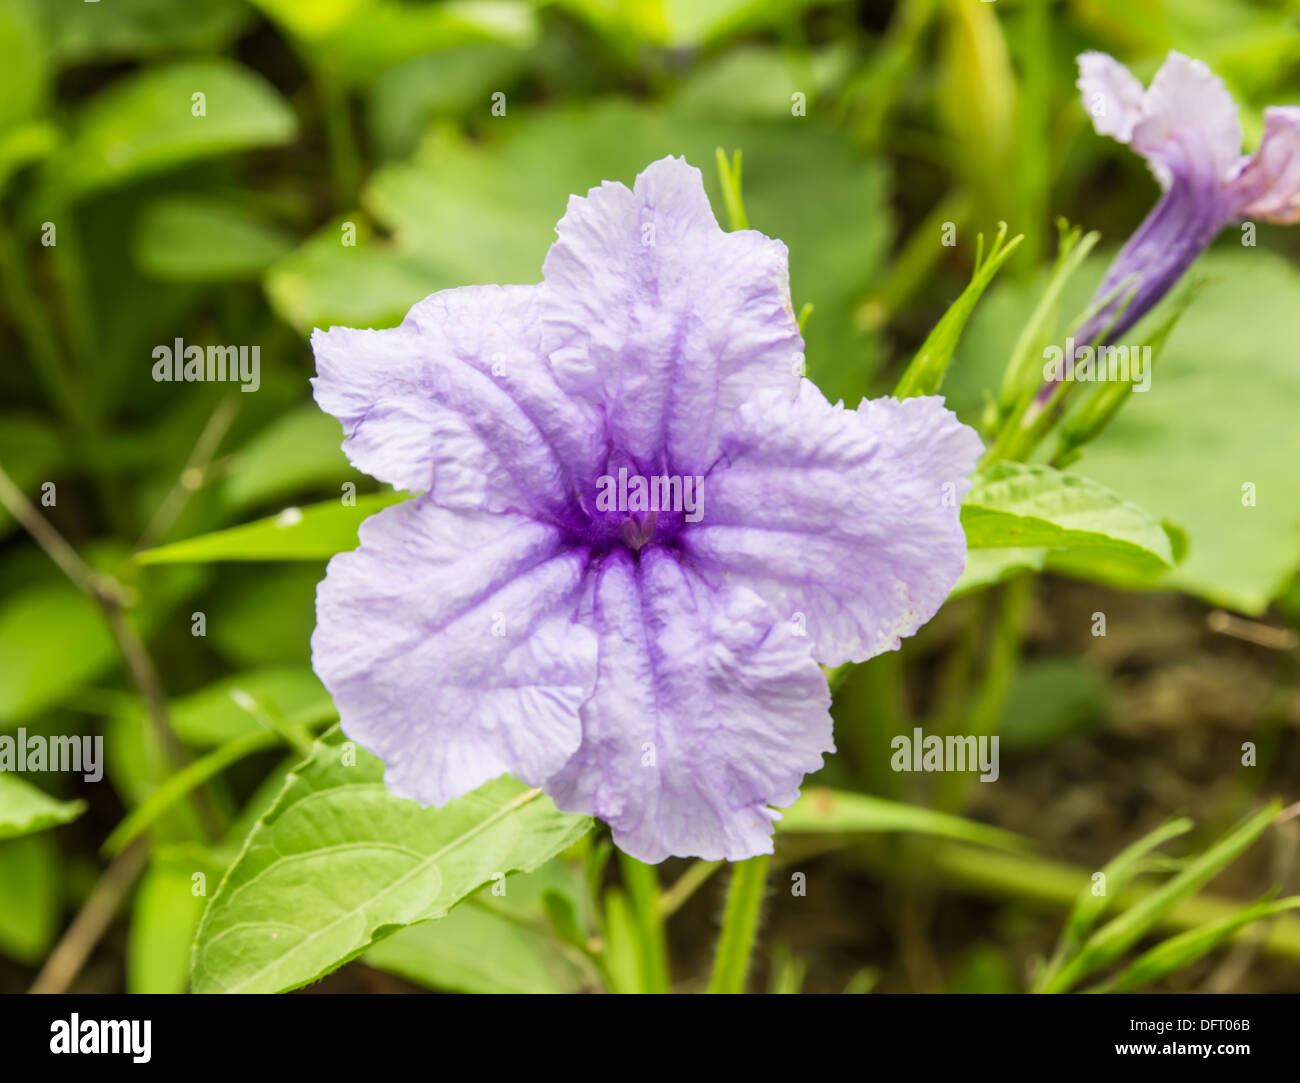 Purple Ruellia Tuberosa Flower on flowers at backgroud Stock Photo